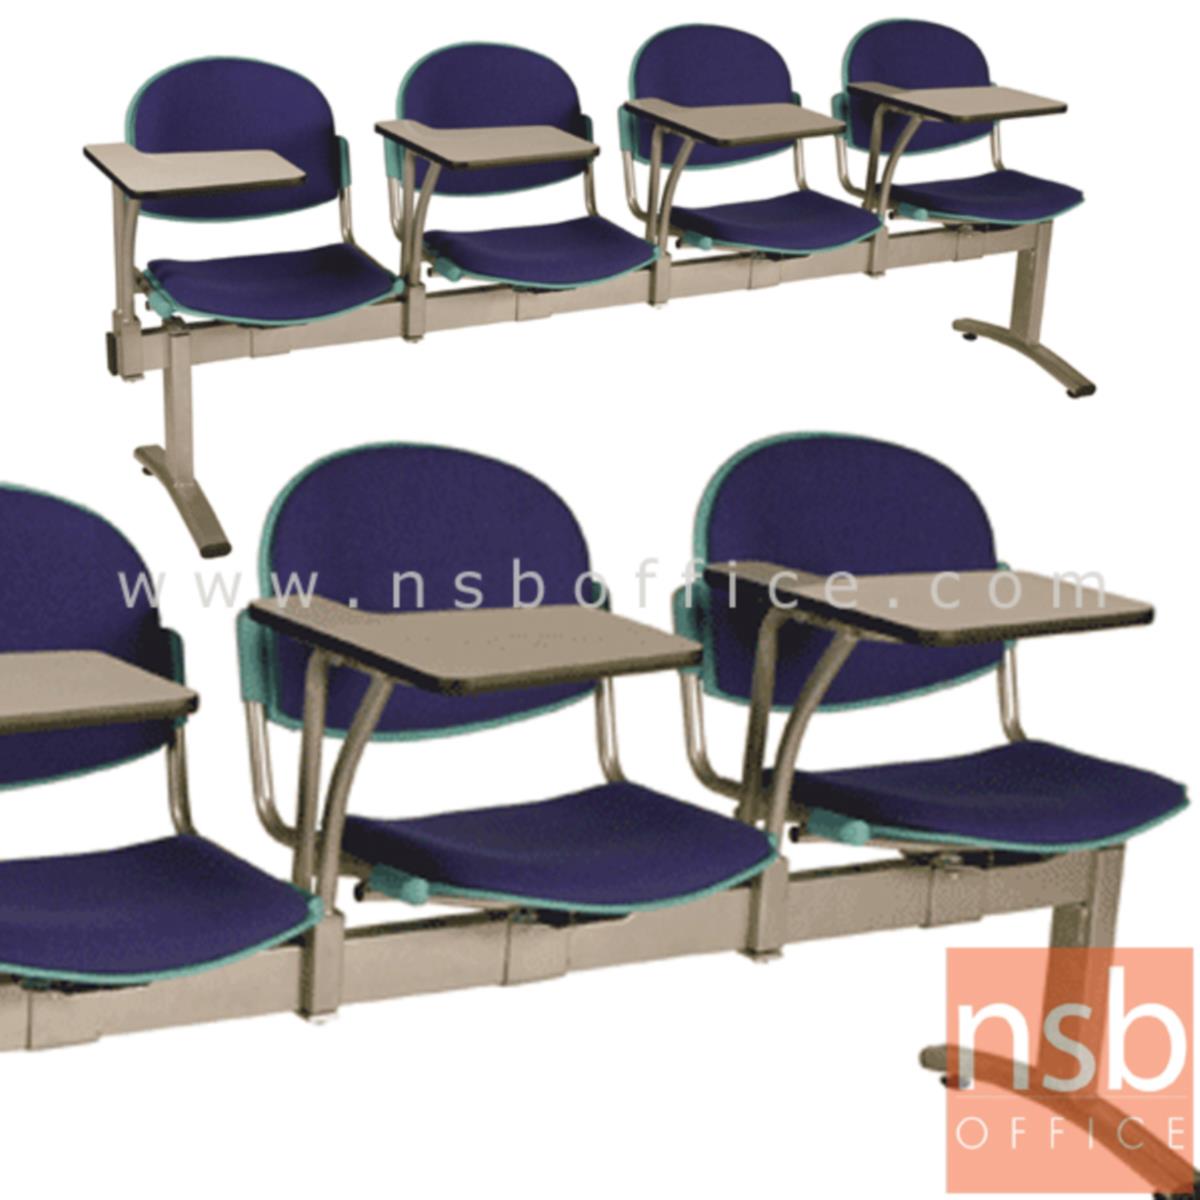 B17A021:เก้าอี้เลคเชอร์แถวเฟรมโพลี่หุ้มเบาะ รุ่น D4656 2 ,3 และ 4 ที่นั่ง ขาเหล็กพ่นสีเทา